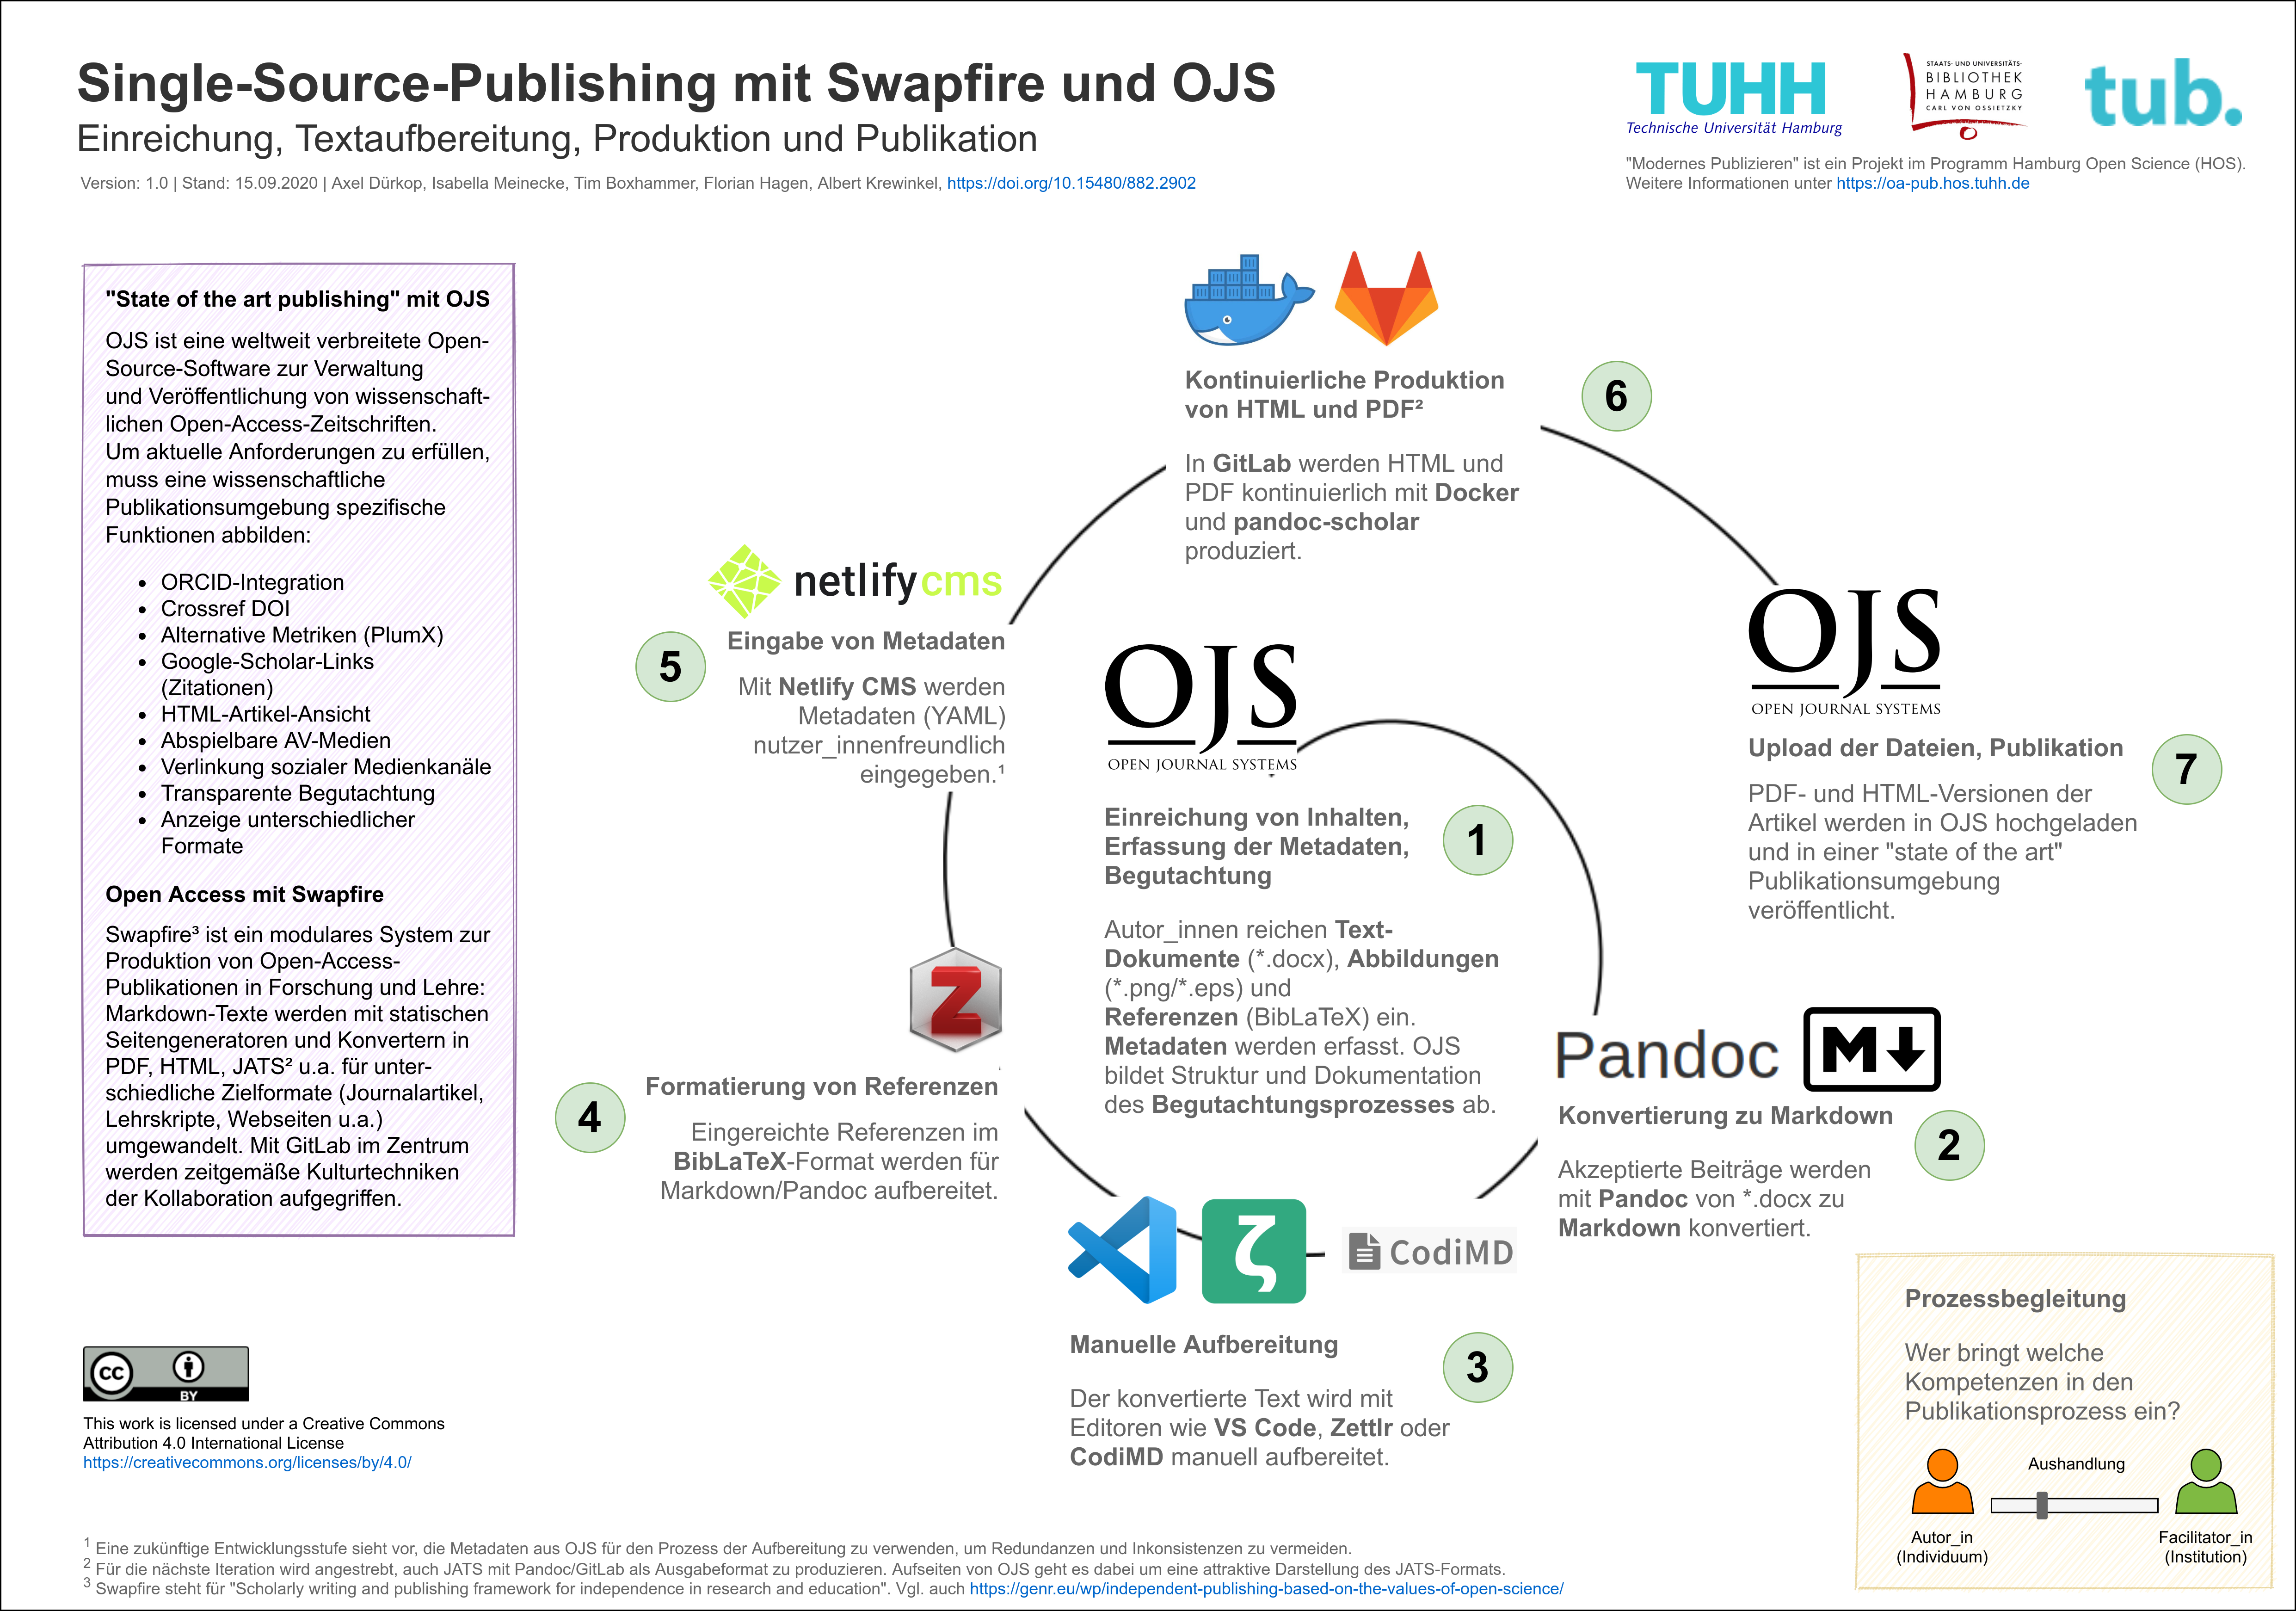 Textaufbereitung, Produktion und Publikation mit einer Kombination von Software-Tools (“Swapfire”) und OJS